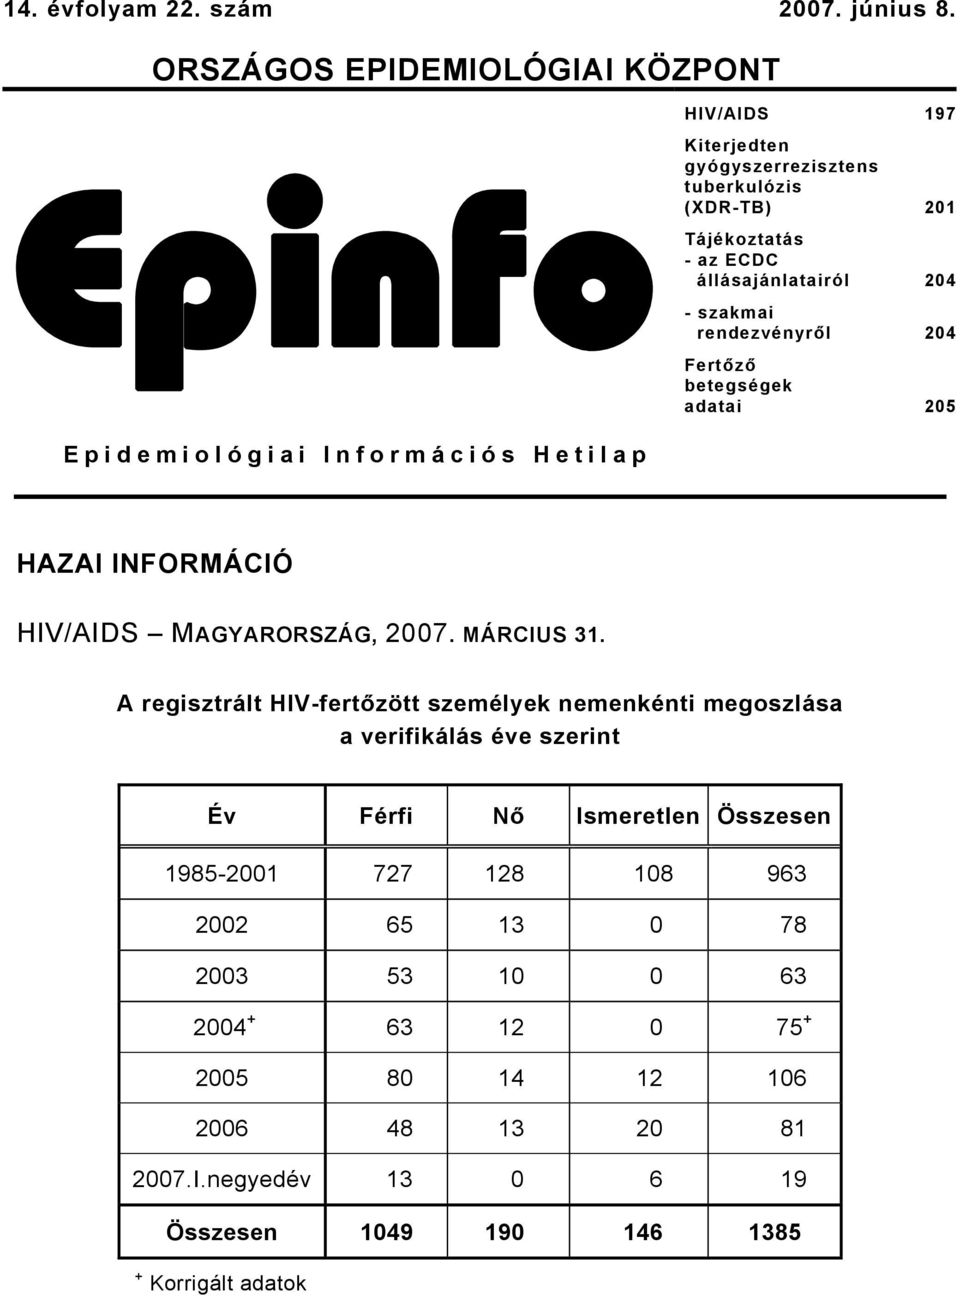 szakmai rendezvényről 204 Fertőző betegségek adatai 205 Epidemiológiai Információs Hetilap HAZAI INFORMÁCIÓ HIV/AIDS MAGYARORSZÁG, 2007. MÁRCIUS 31.